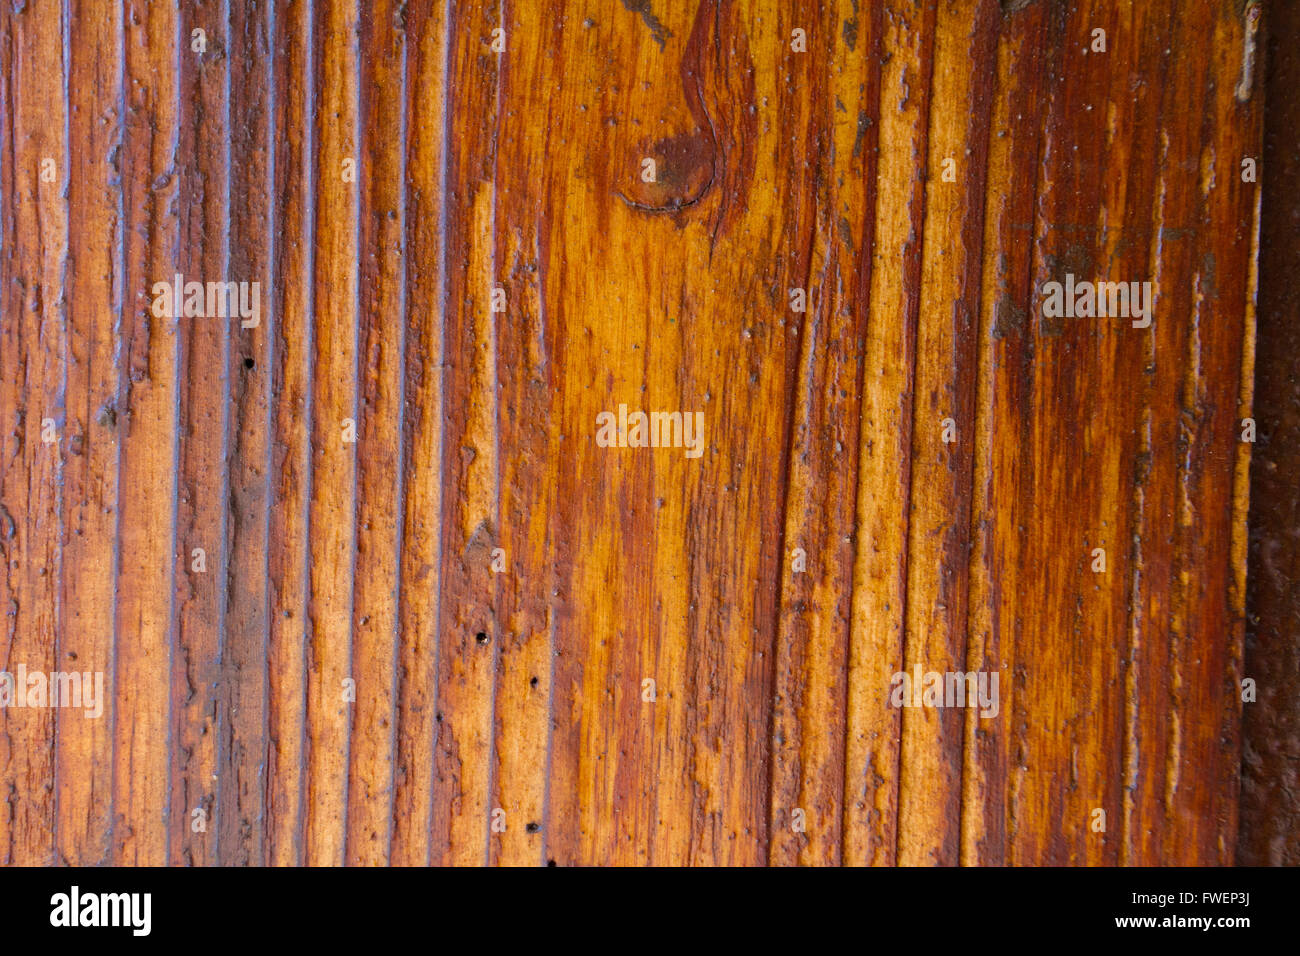 Ces bandes verticales sont typiques de ce type de bois tropicaux sur l'île d'Hawaii. Cette image est un détail de la nature backgrou Banque D'Images